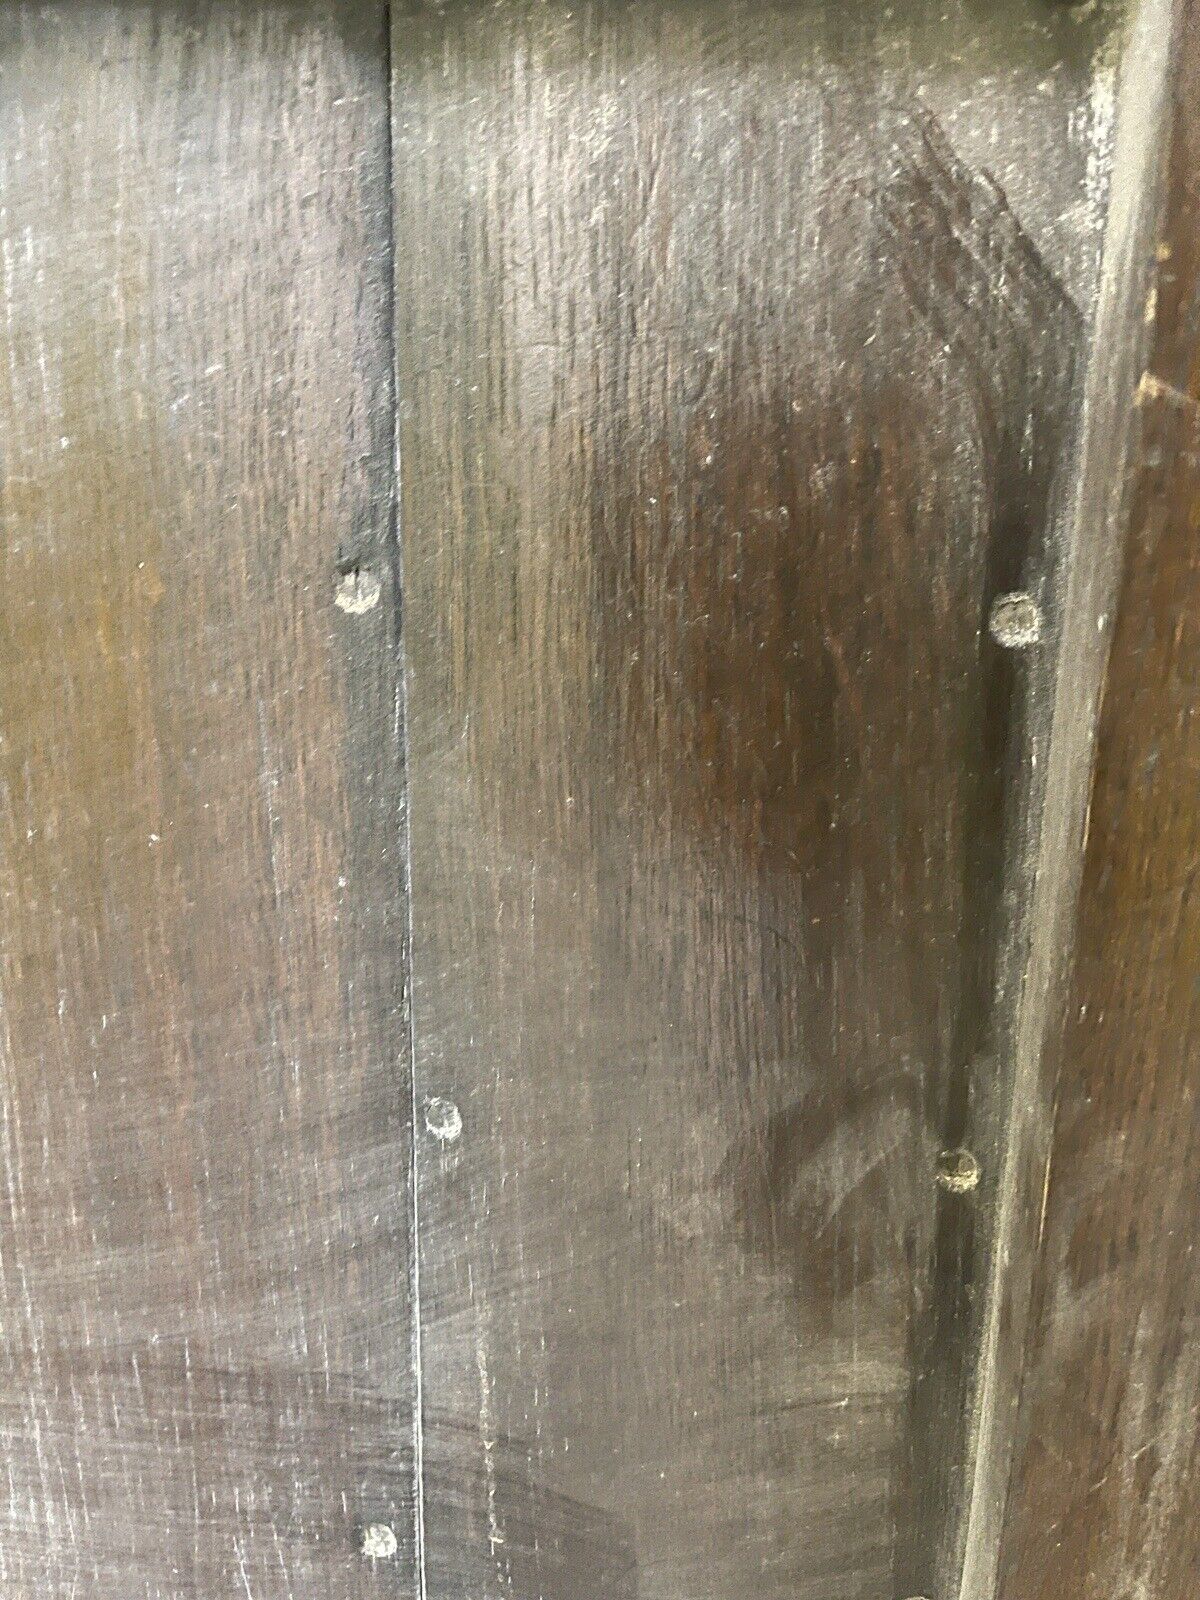 Reclaimed Old Wooden Front Door 1640 x 690mm